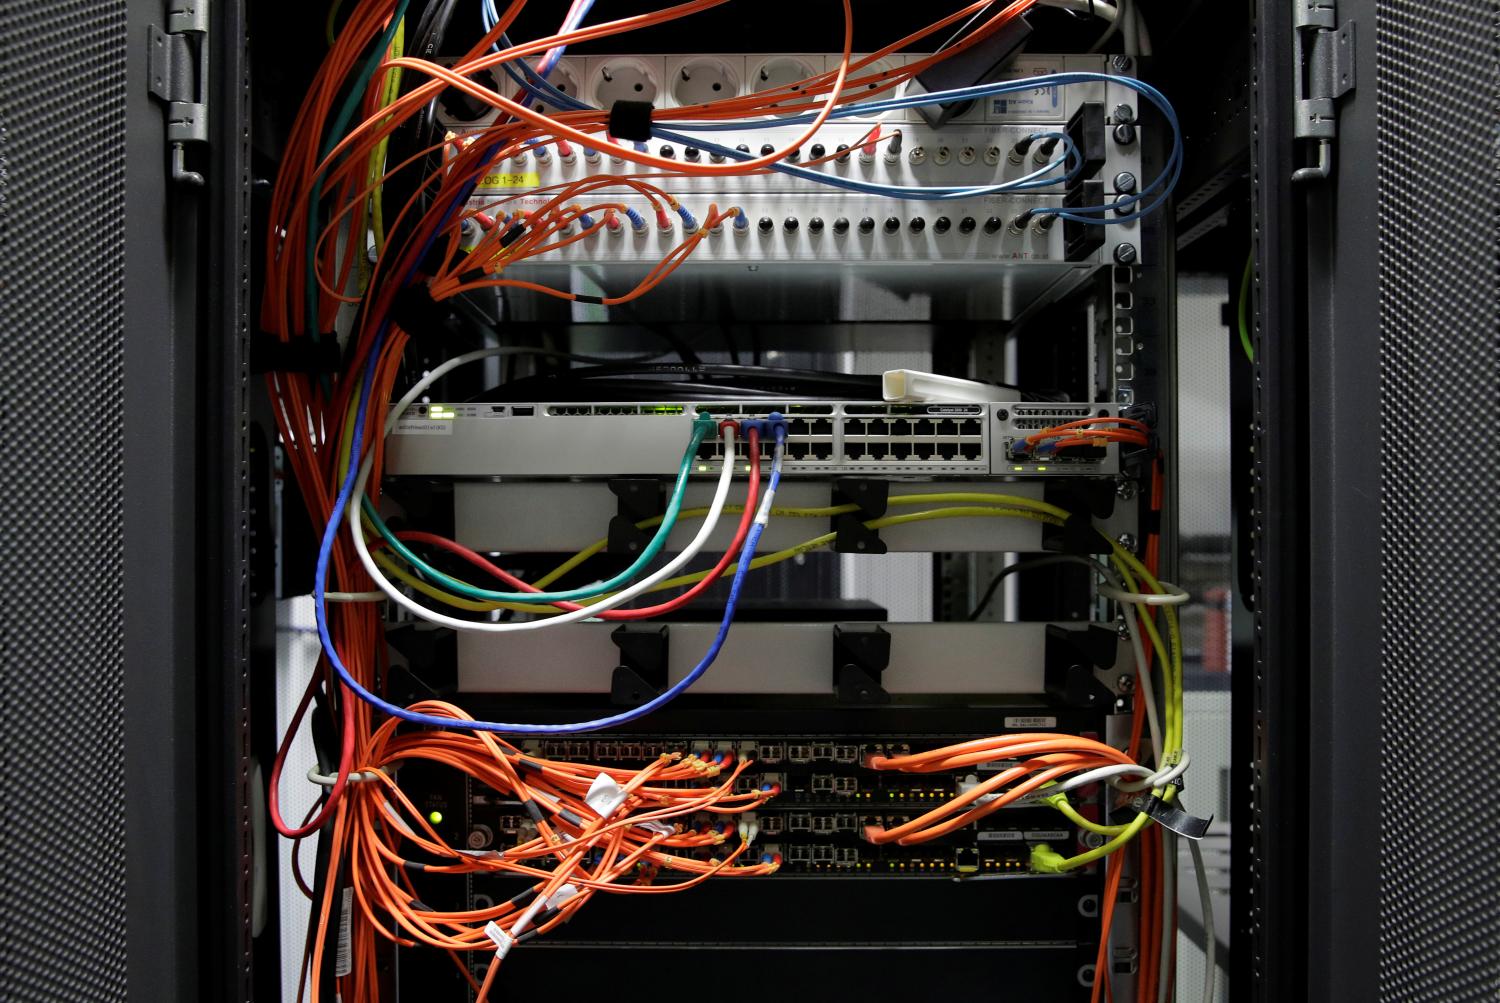 Computer network equipment is seen in a server room in Vienna, Austria, October 25, 2018. REUTERS/Heinz-Peter Bader